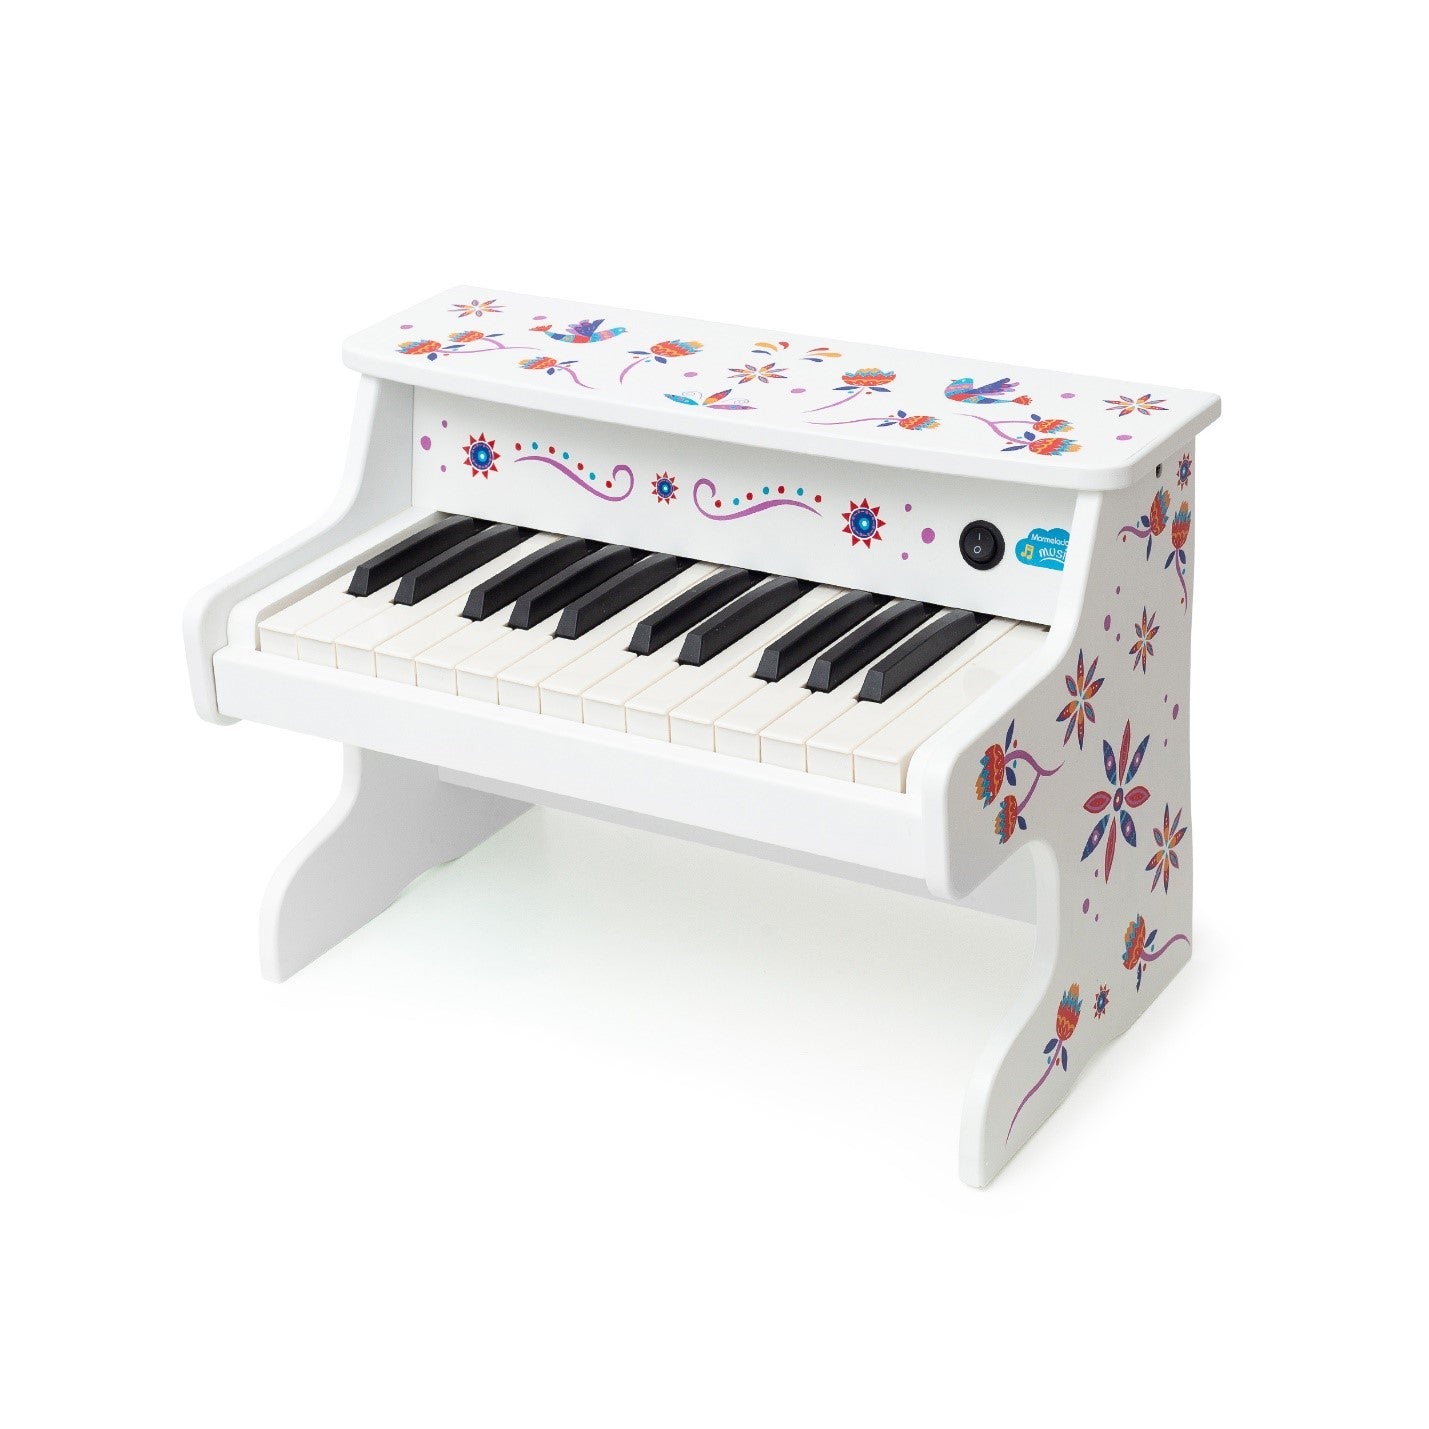 Happy Bird, White, Digital Piano for Kids with 25 Keys